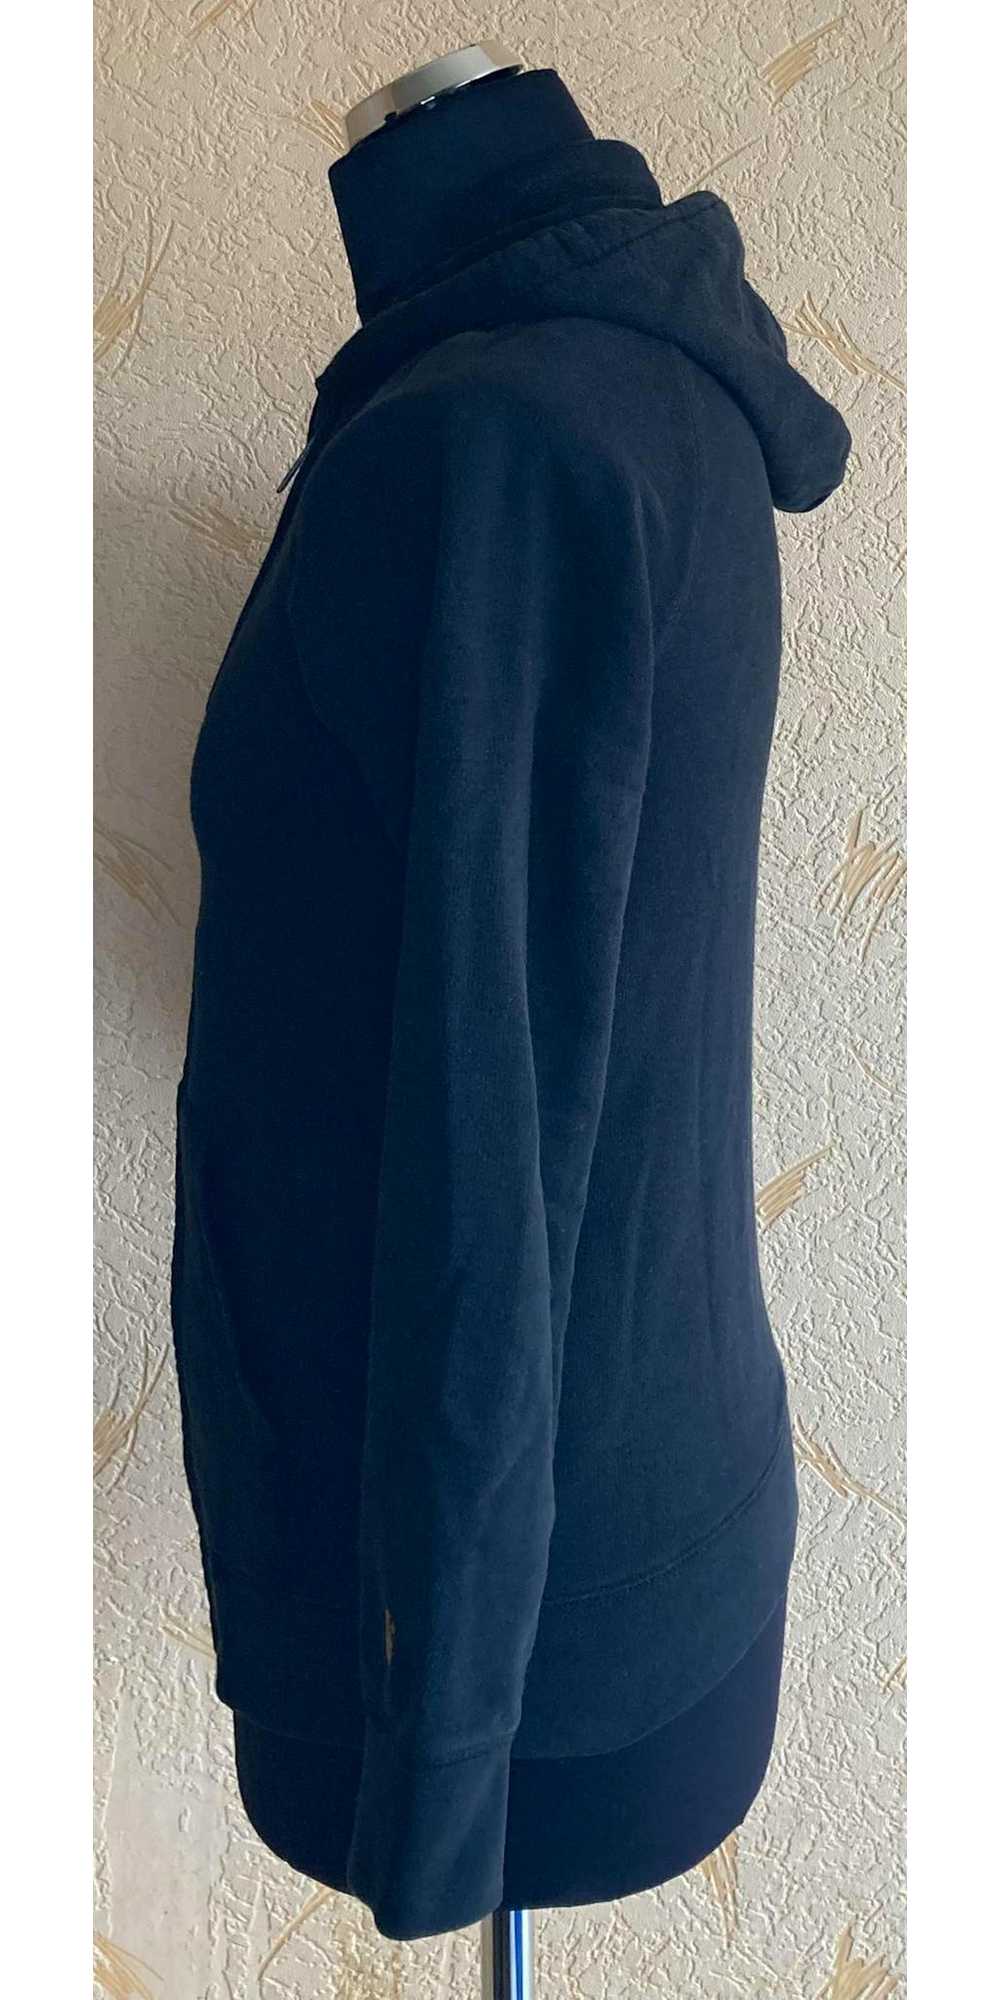 Carhartt Wip × Streetwear Carhartt WIP hoodie siz… - image 4